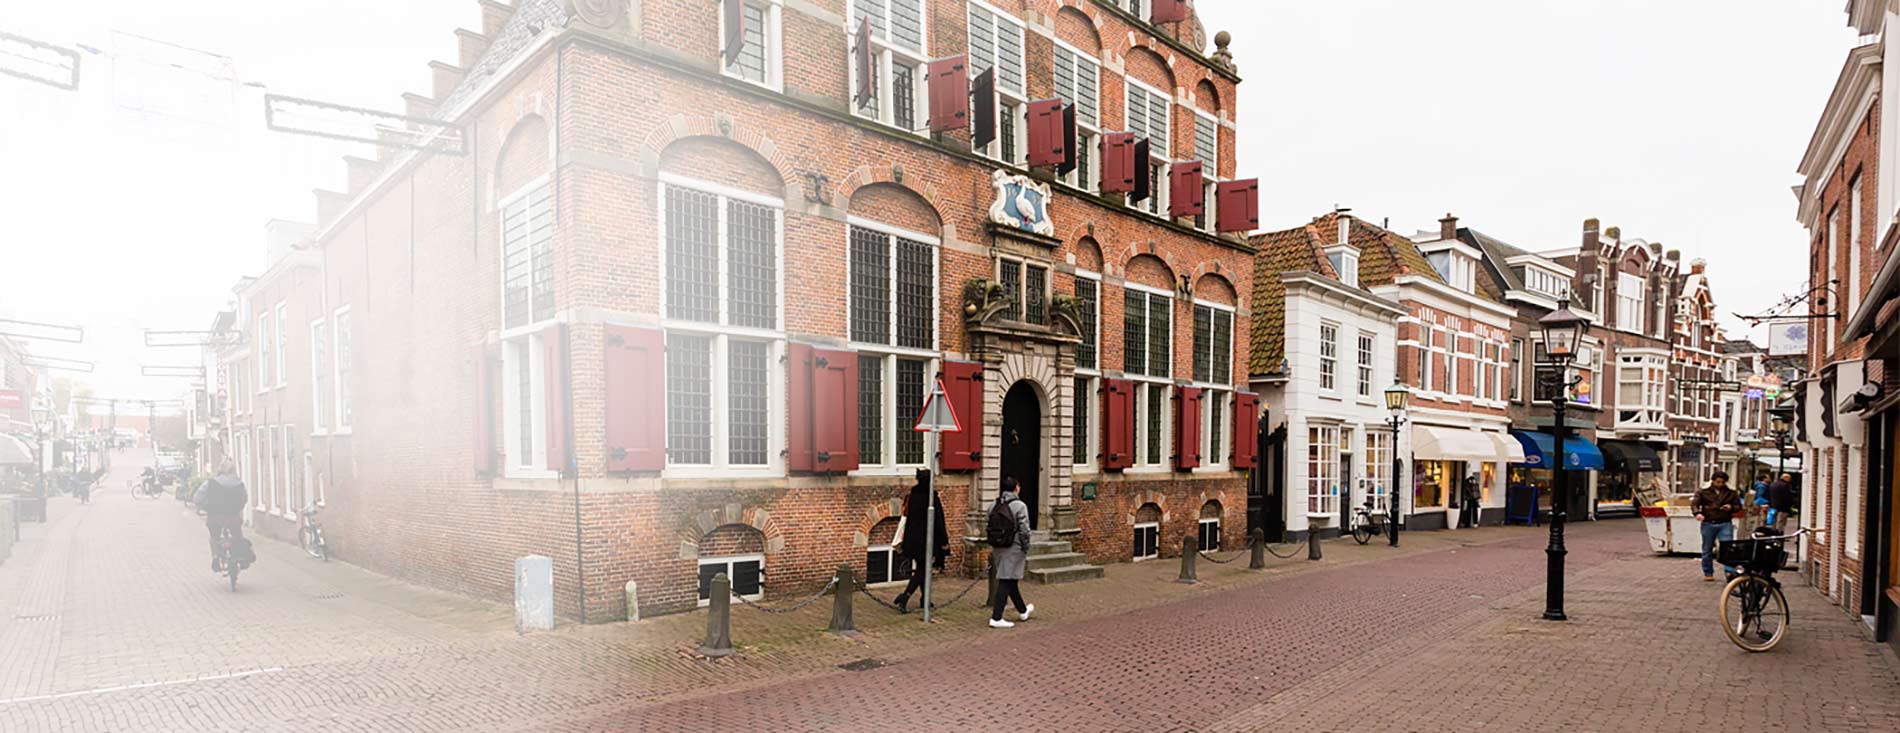 Huygensmuseum in Voorburg - Mooijman Assurantiën Adviseurs in Zekerhei